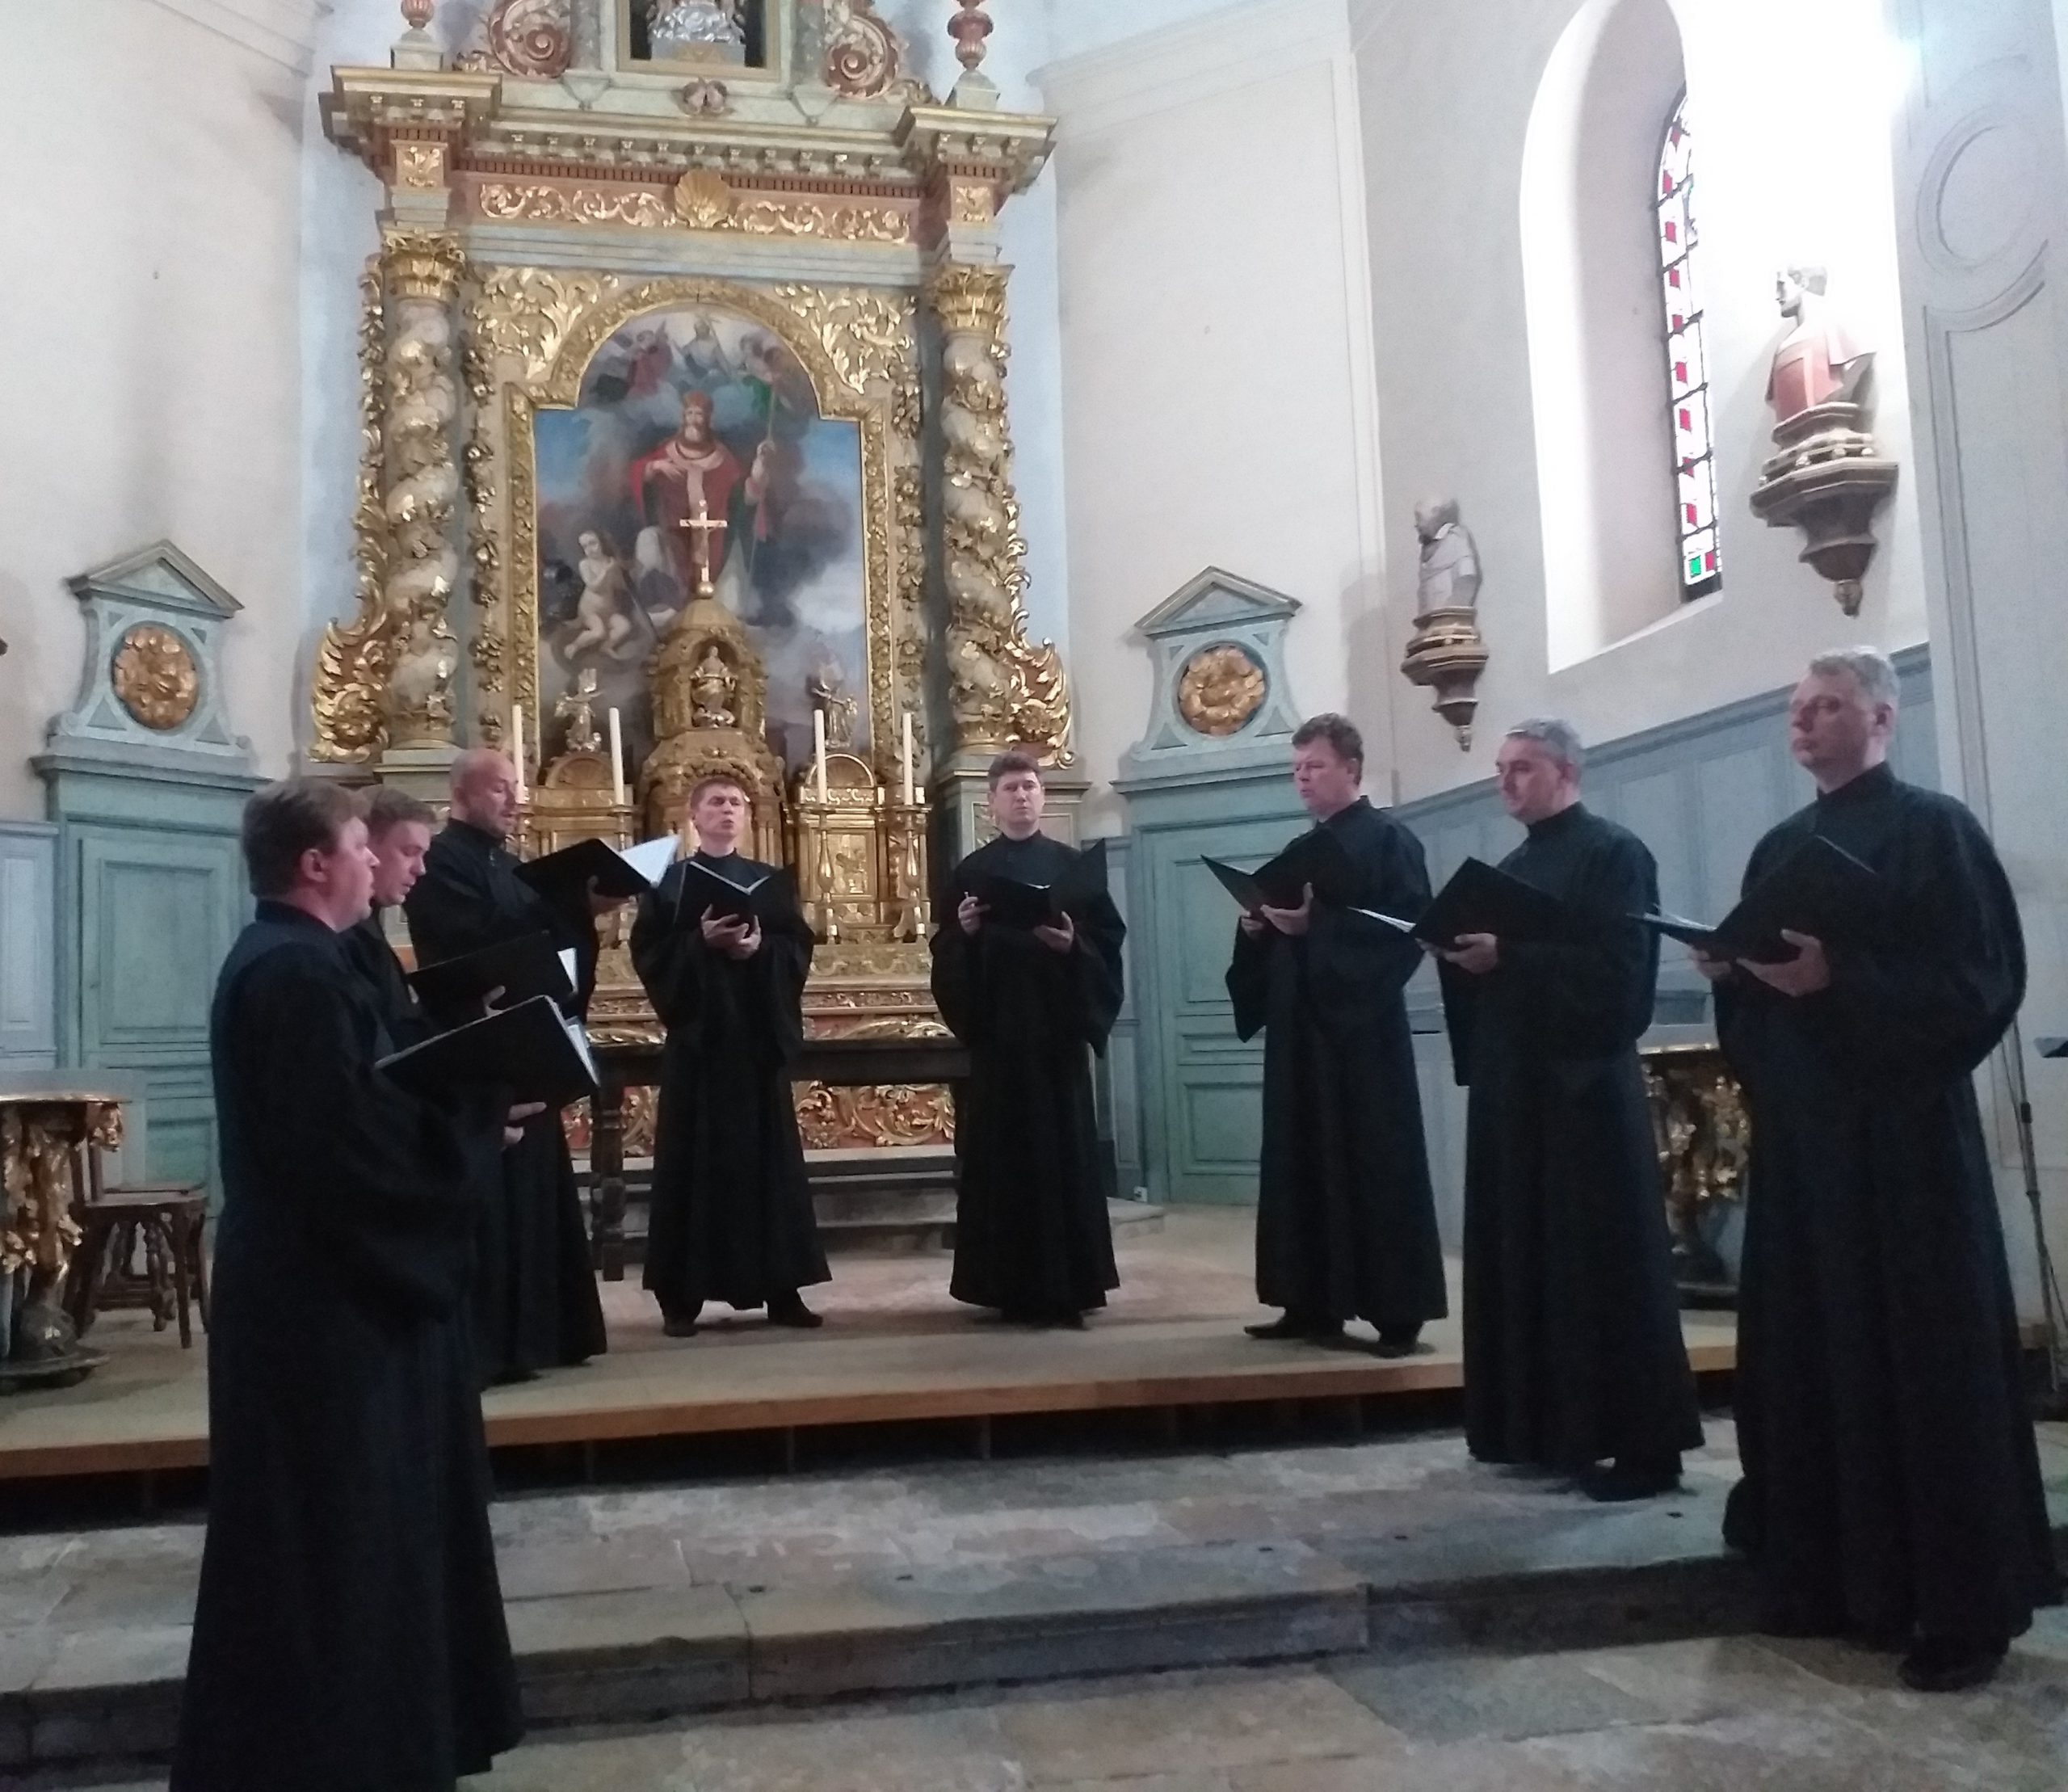 Les hommes en chasubles noires interprètent des chants de la liturgie orthodoxe.